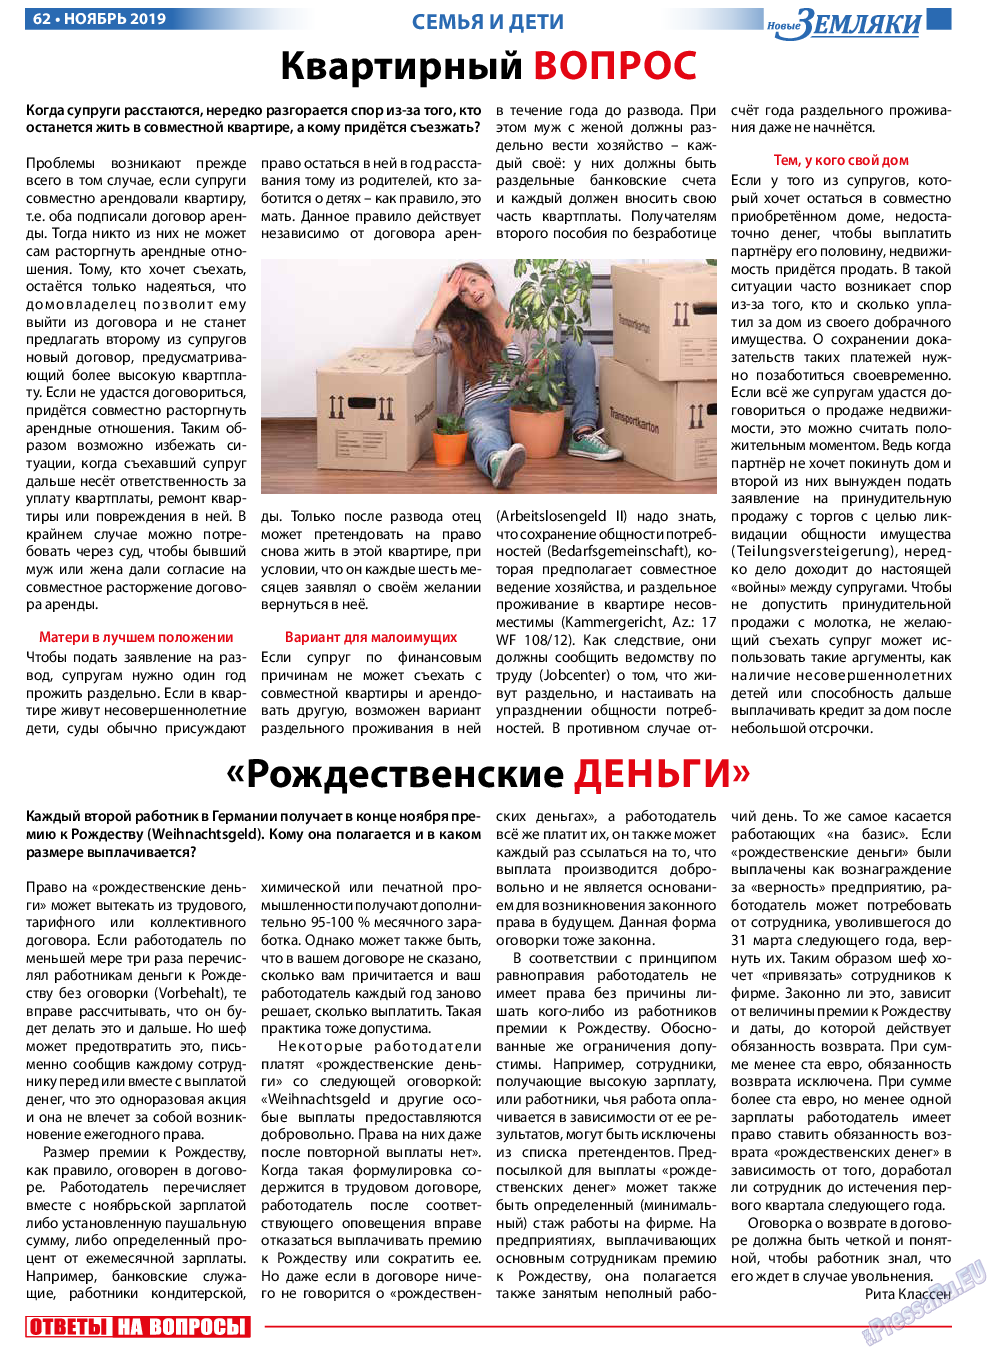 Новые Земляки, газета. 2019 №11 стр.62